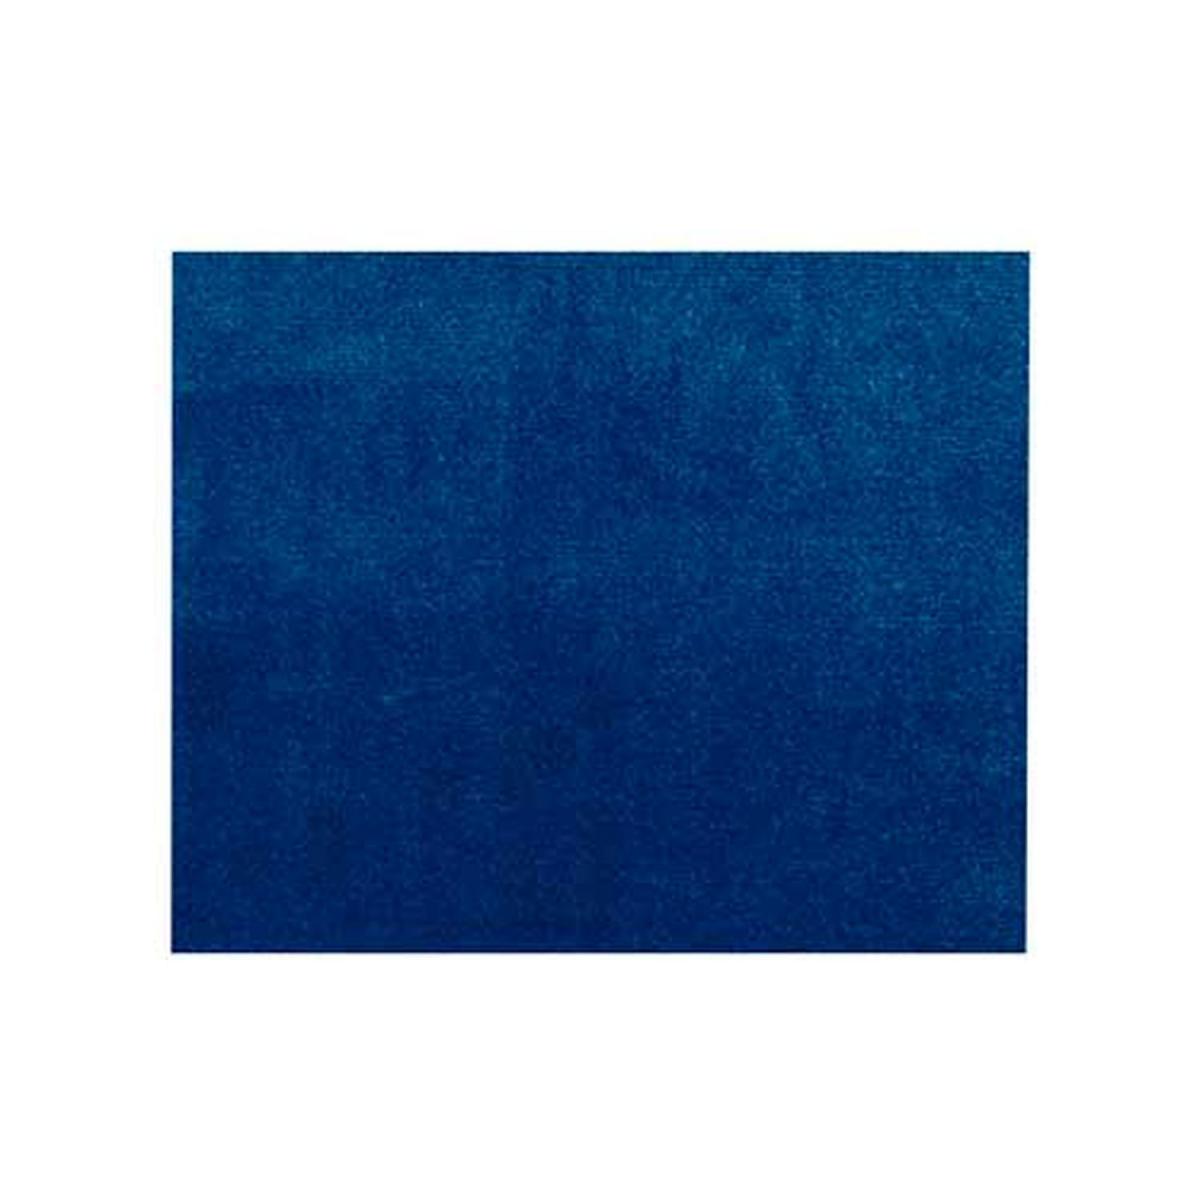 Sudtrading - Adhésif décoratif Aspect velours bleu - 150 x 45cm - Papier peint